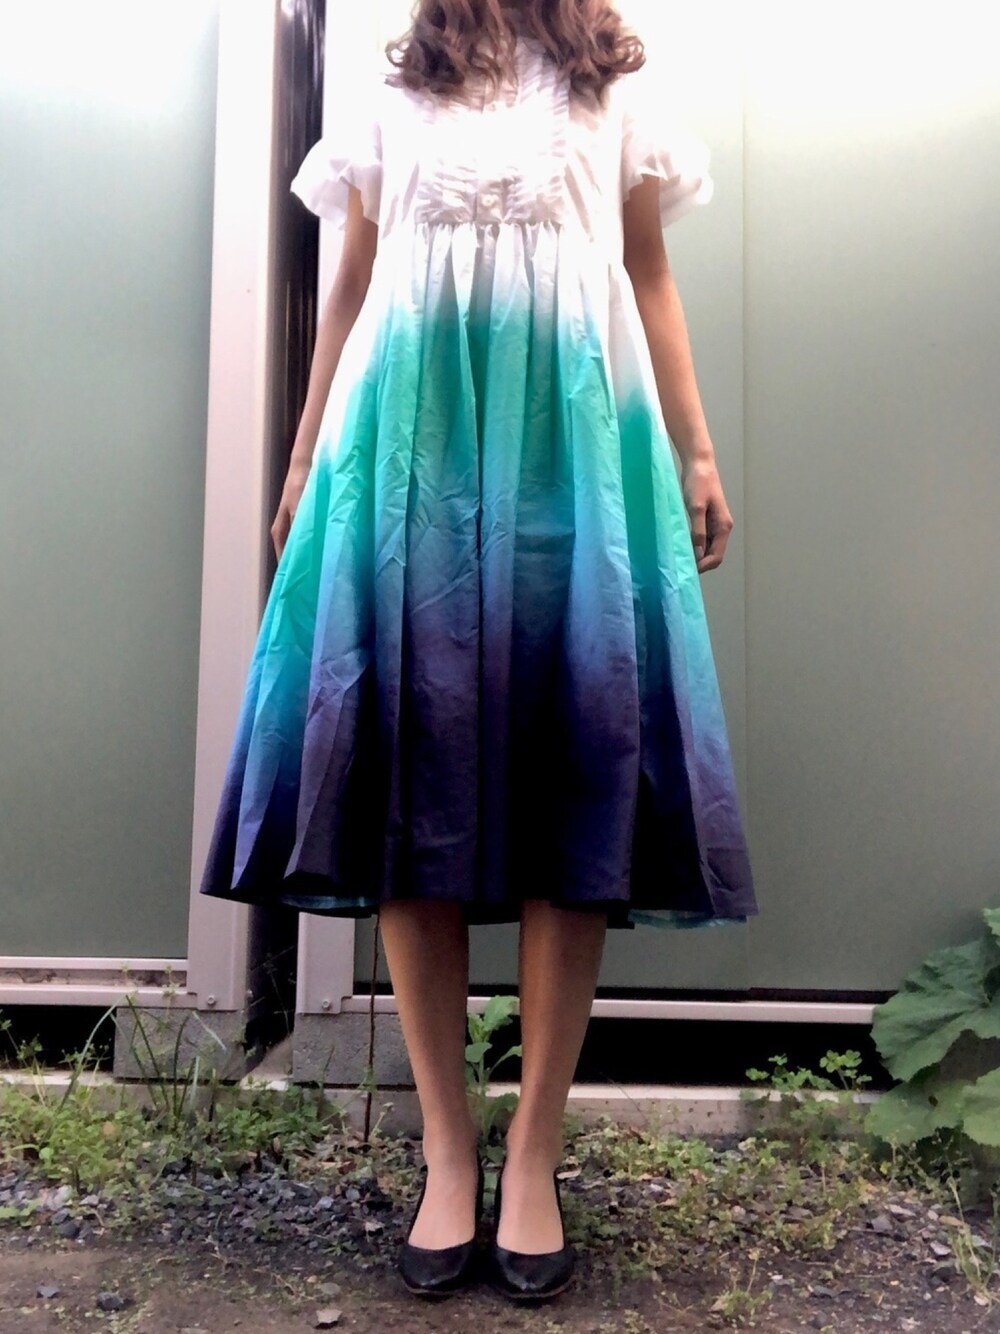 hazama 見えないものを見ようとして見上げた夜空のシャツドレス受注生産で販売されたha